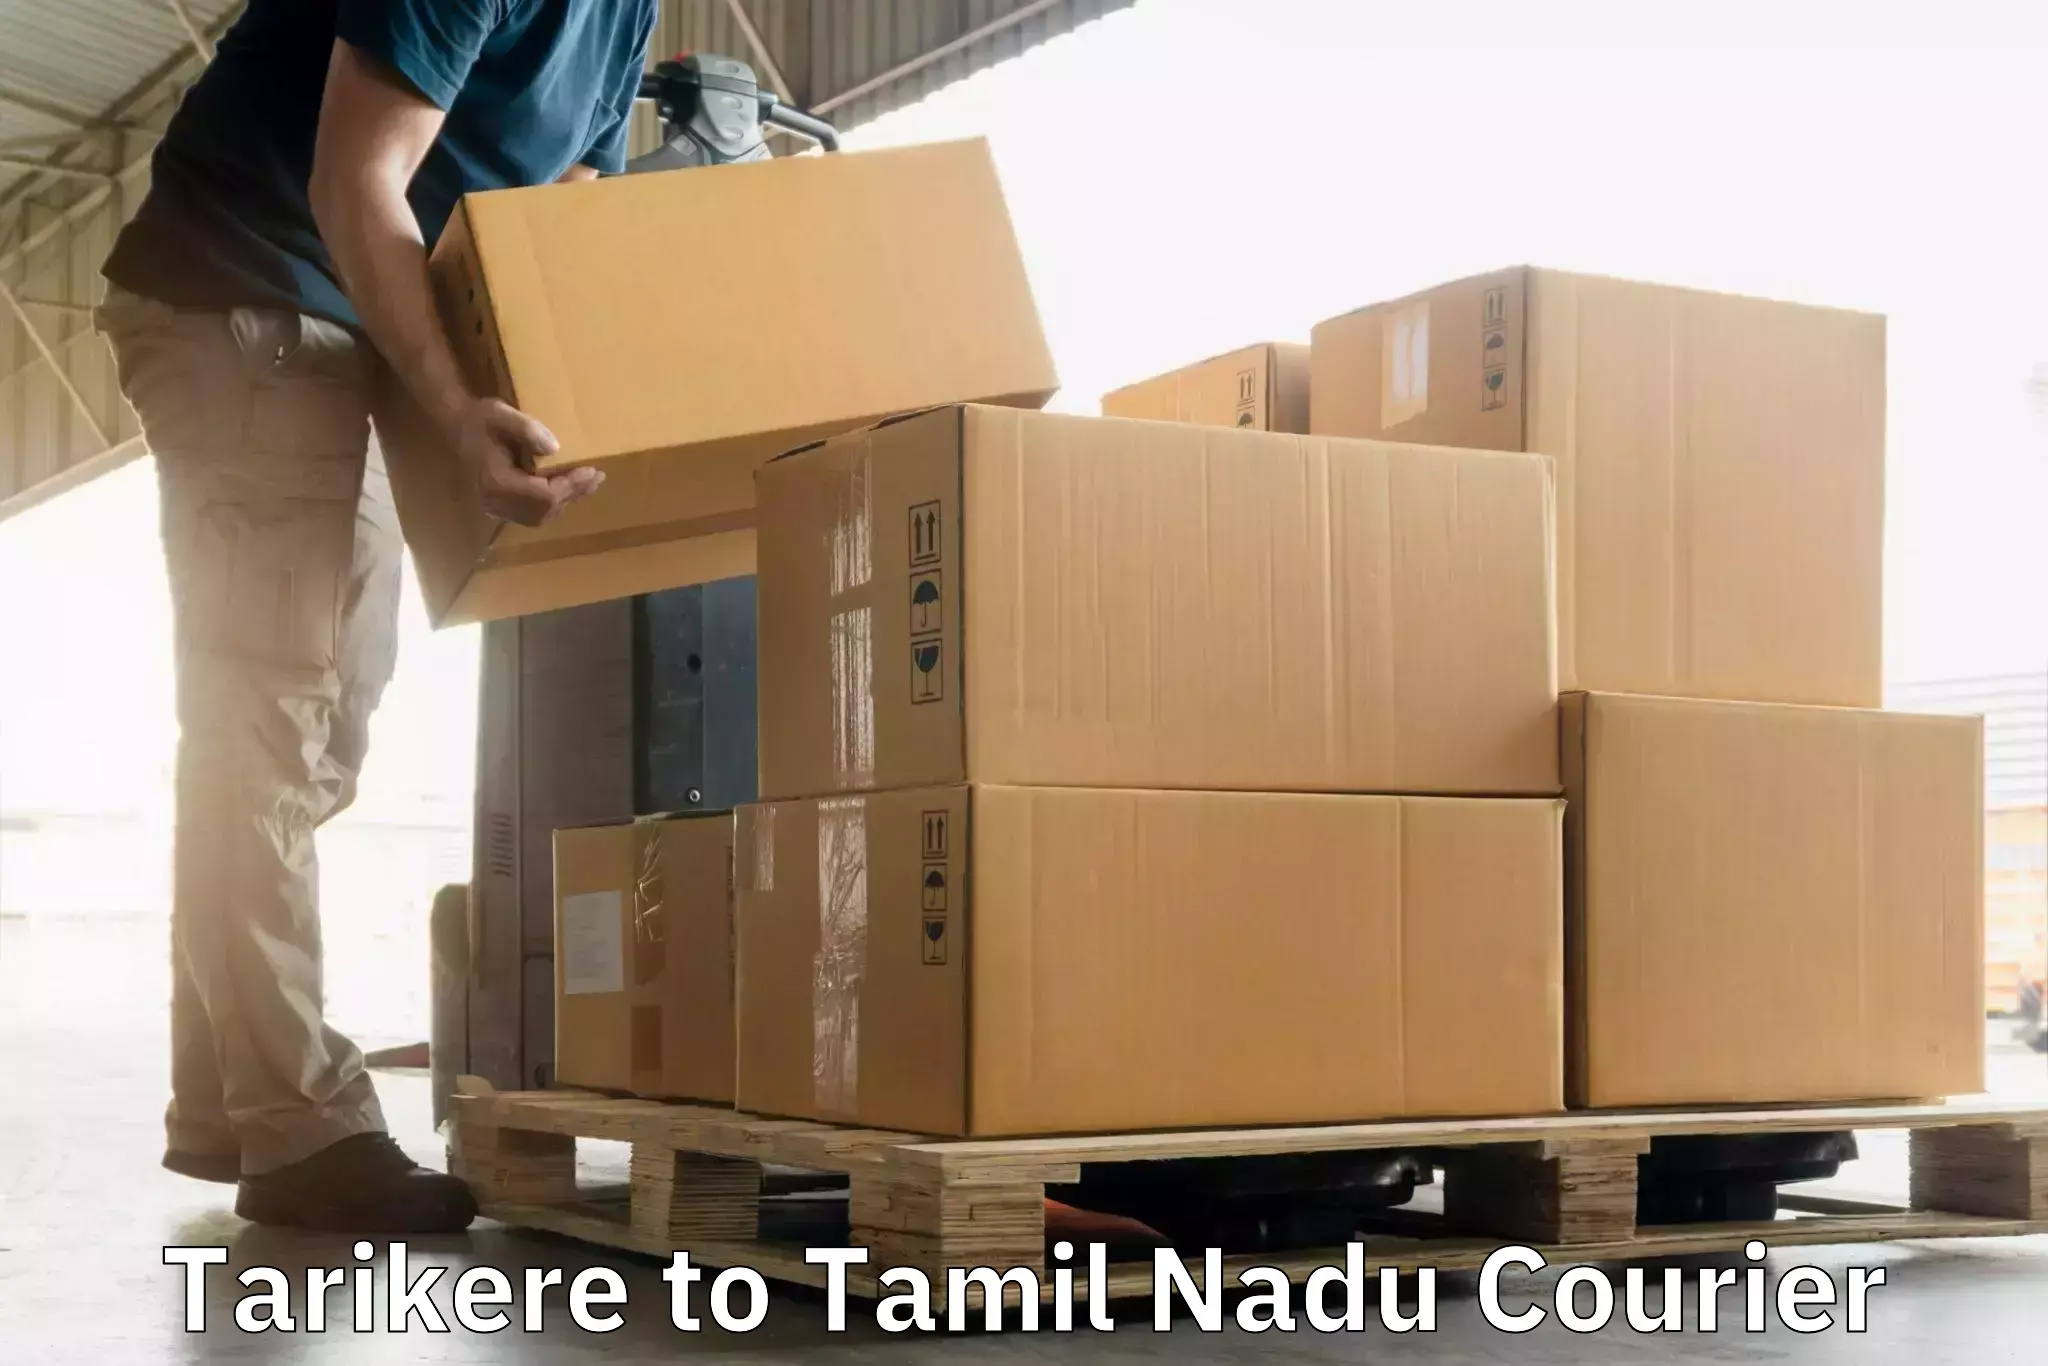 Optimized shipping routes Tarikere to Chennai Port